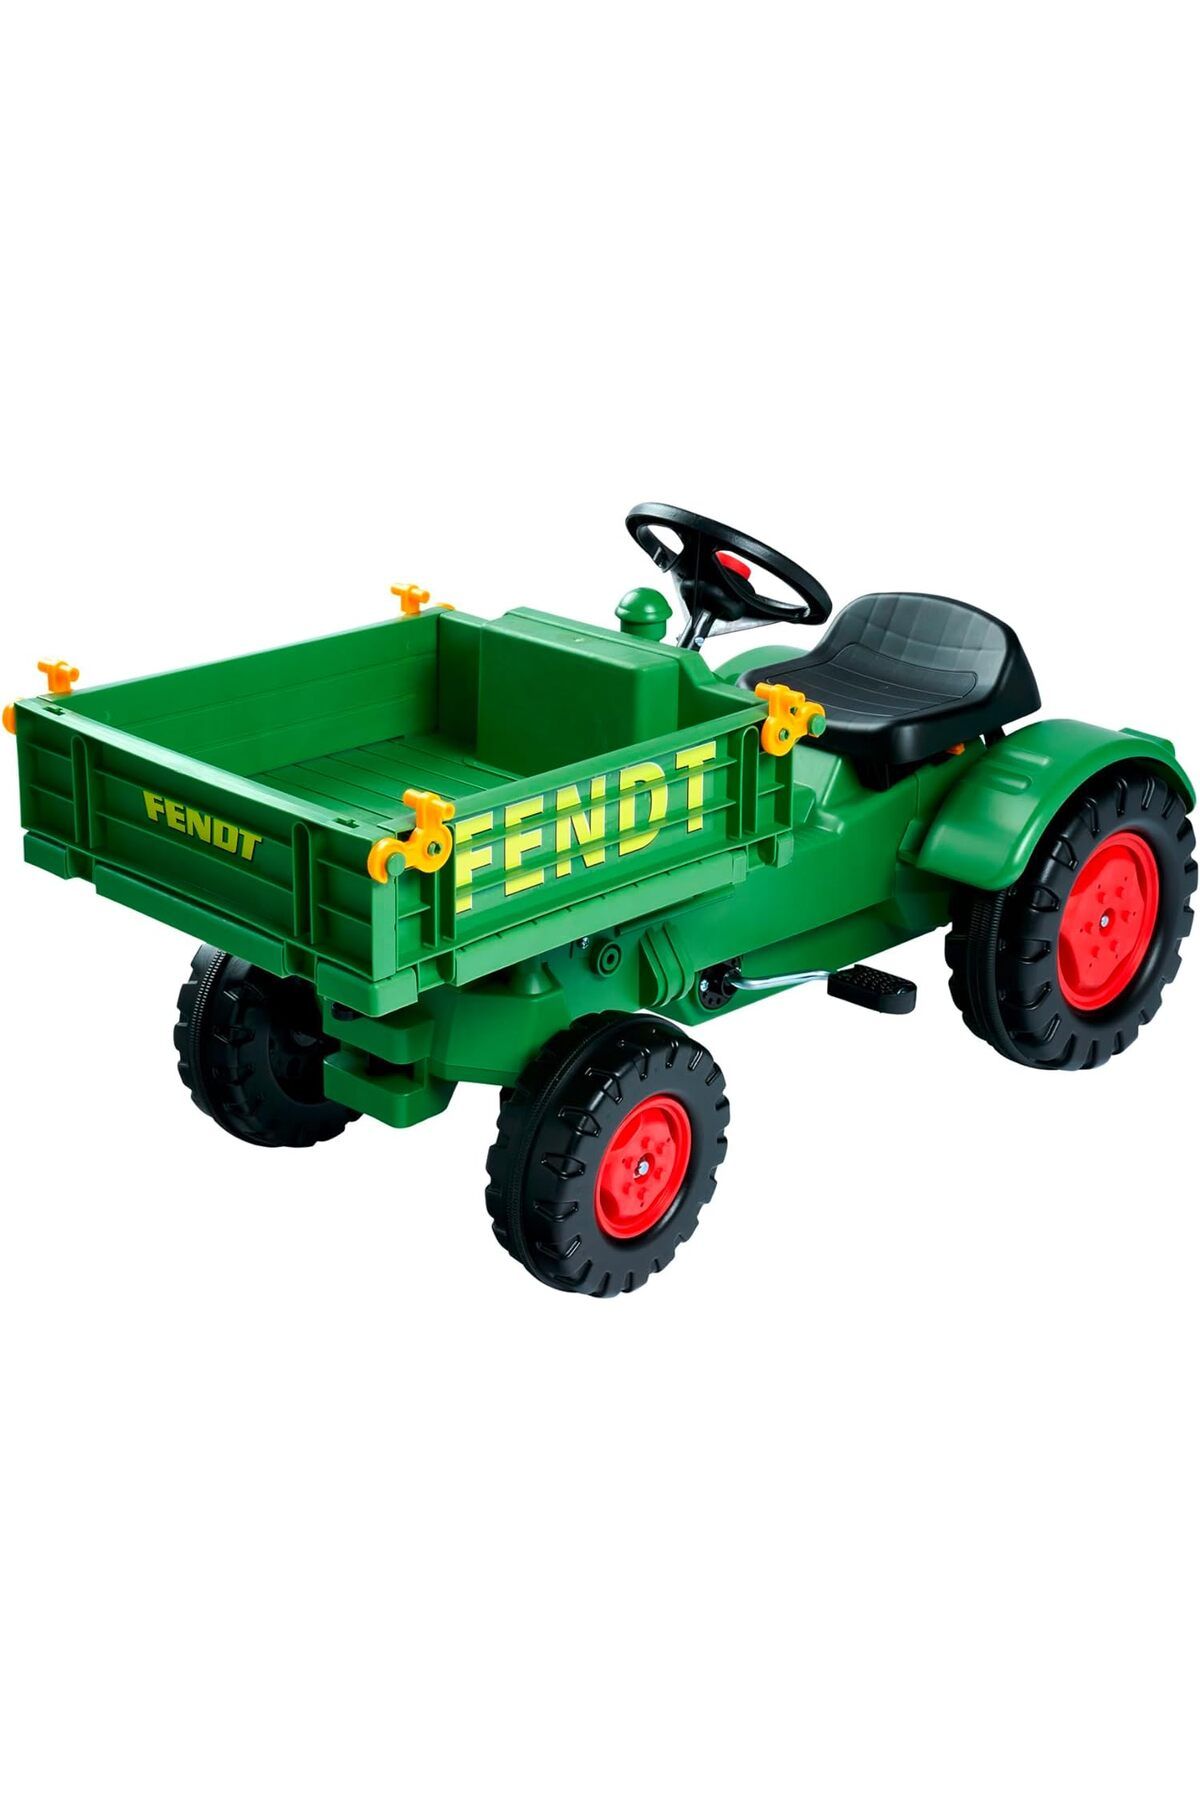 BIG Spielwarenfabrik Alet Taşıyıcı Çocuk Traktörü, Hassas Zincir Tahrikli, 3 Kademeli Koltuk 50 kg'a Kadar Taşıma